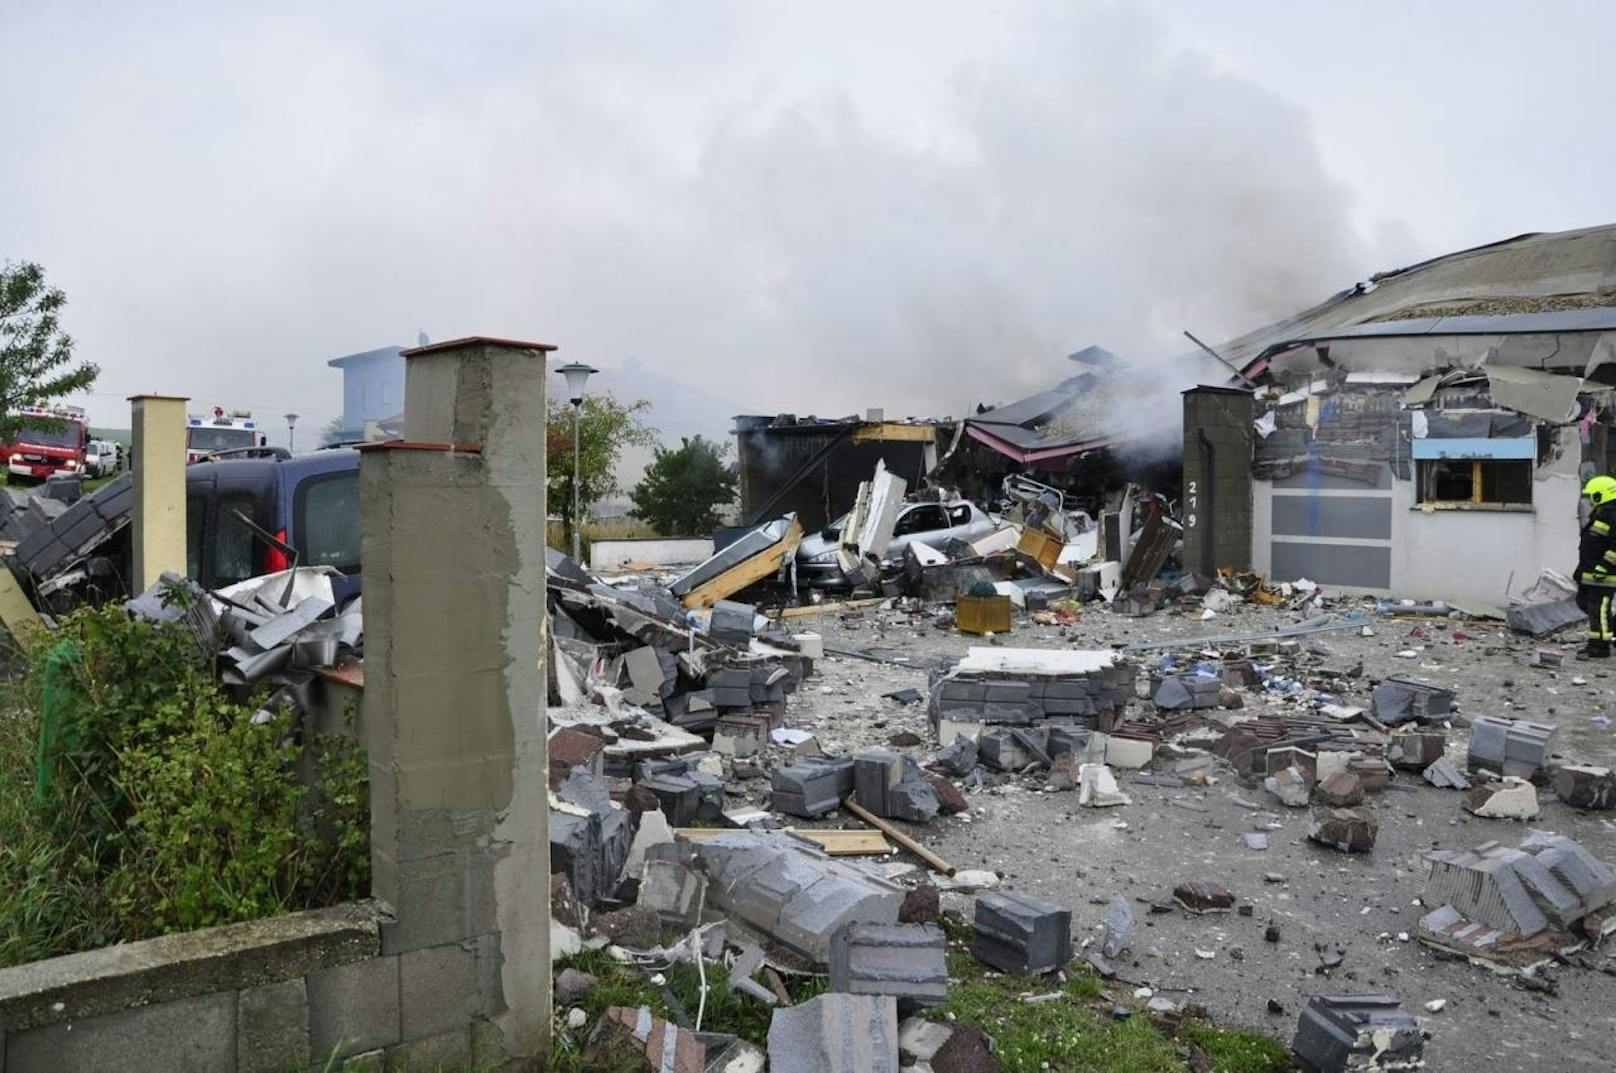 Verwüstung nach einer Explosion in Aspersdorf (Hollabrunn): Das Haus wurde dabei völlig zerstört.